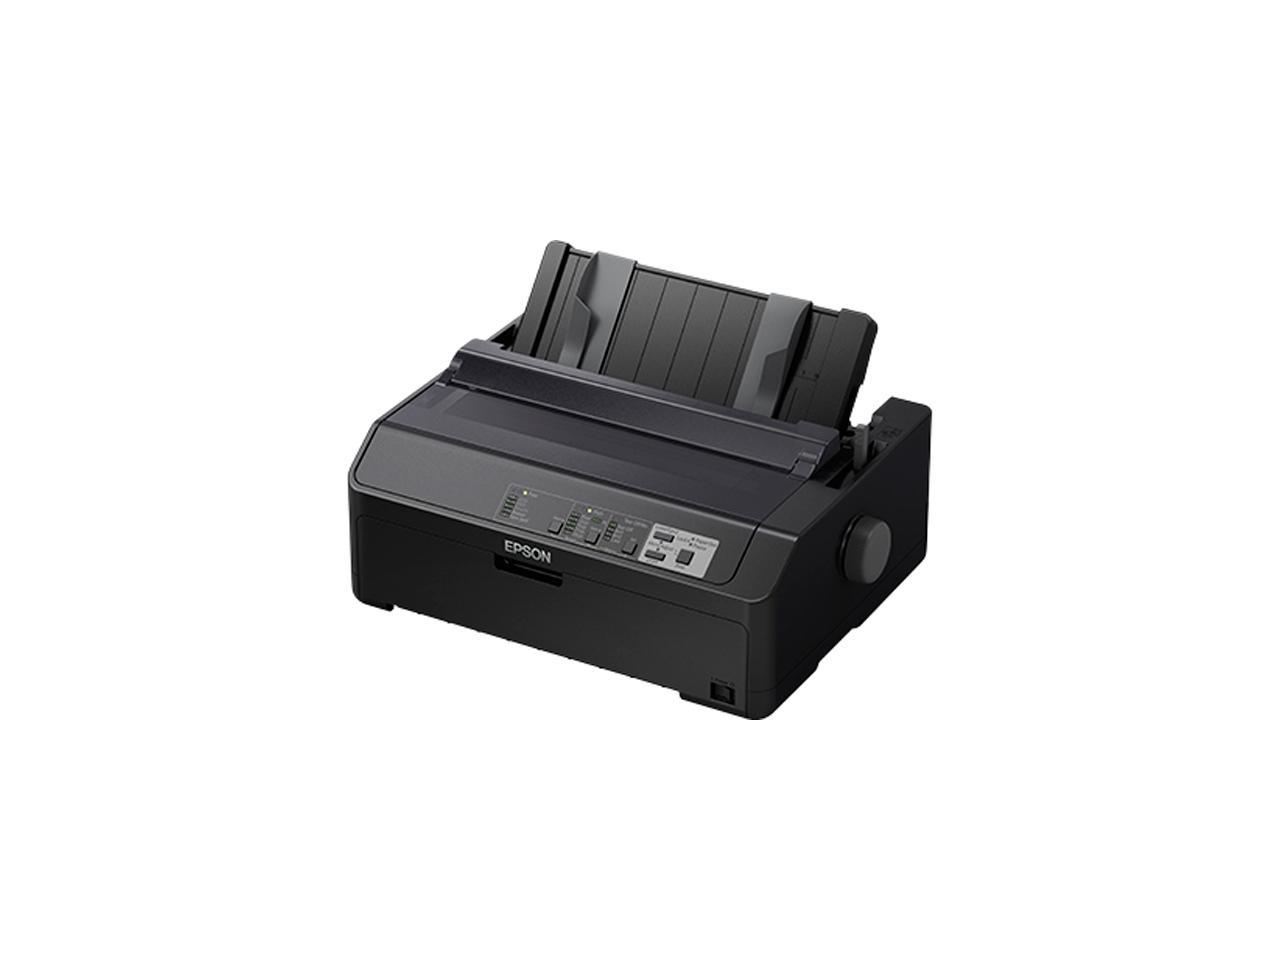 Epson Lq 590ii Monochrome Dot Matrix Printer 1202